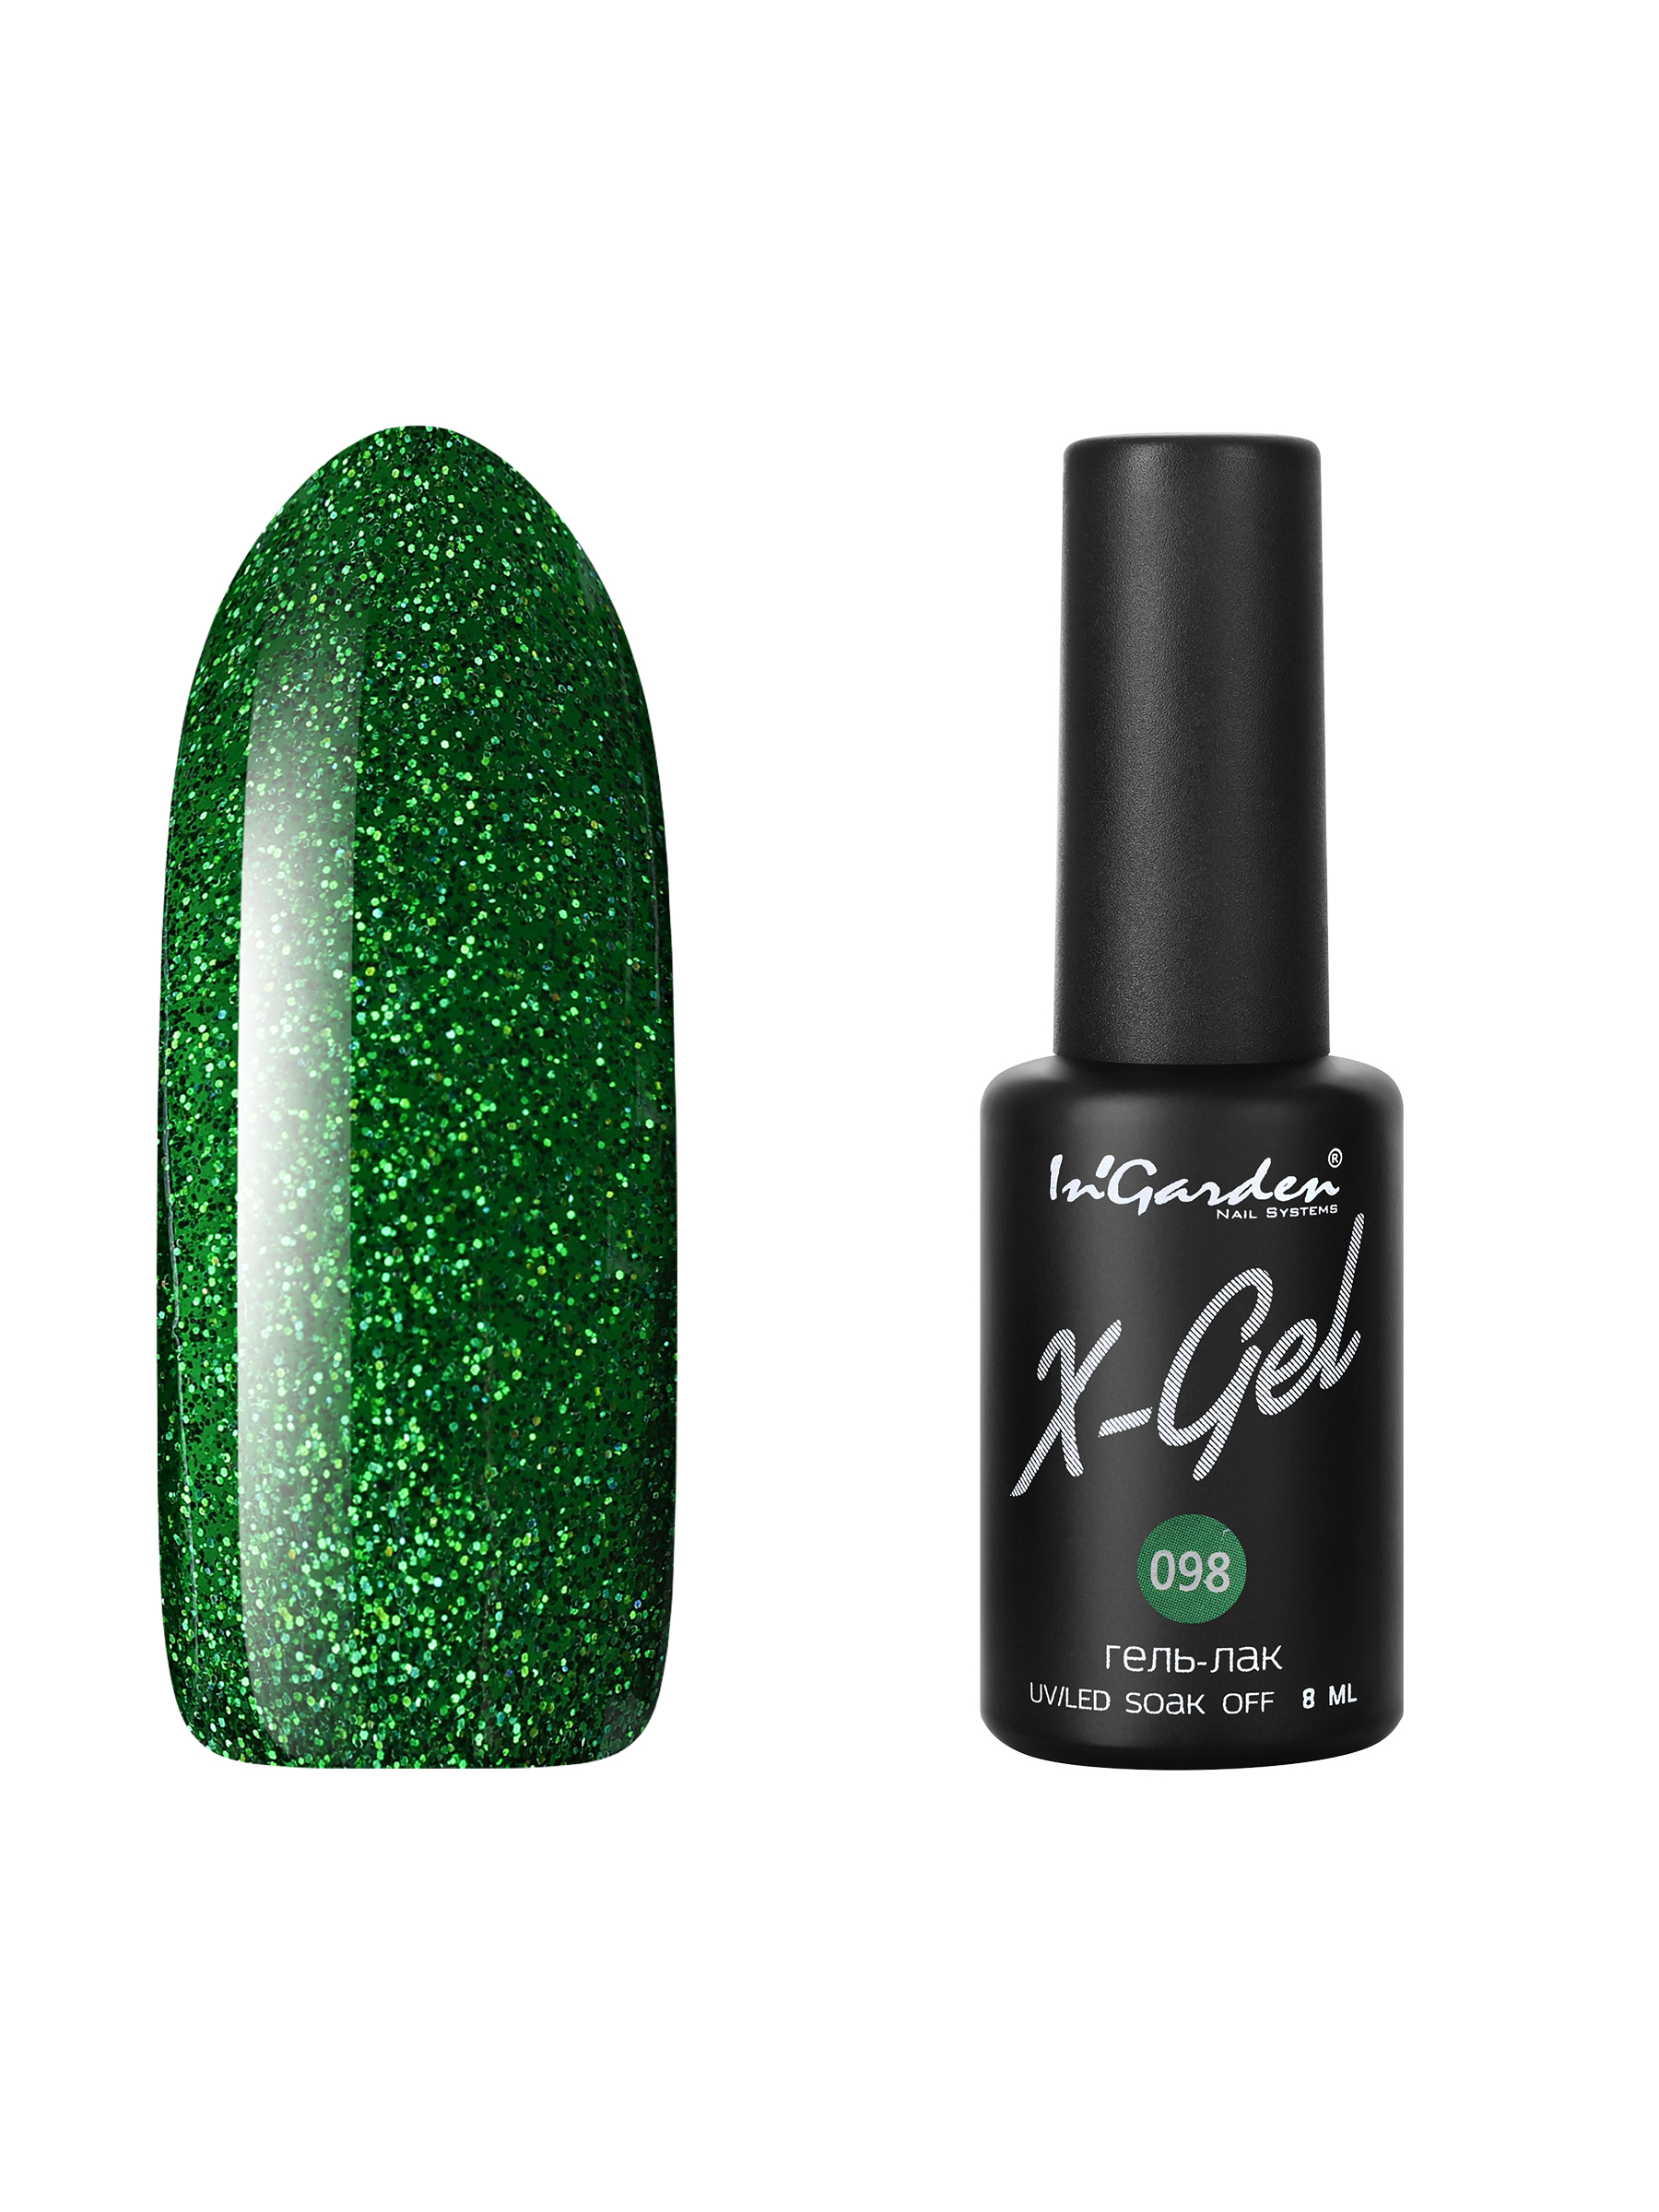 Купить Гель лак для ногтей In’Garden X-Gel N° 98 светло-зеленый с блестками 8 мл, In'Garden